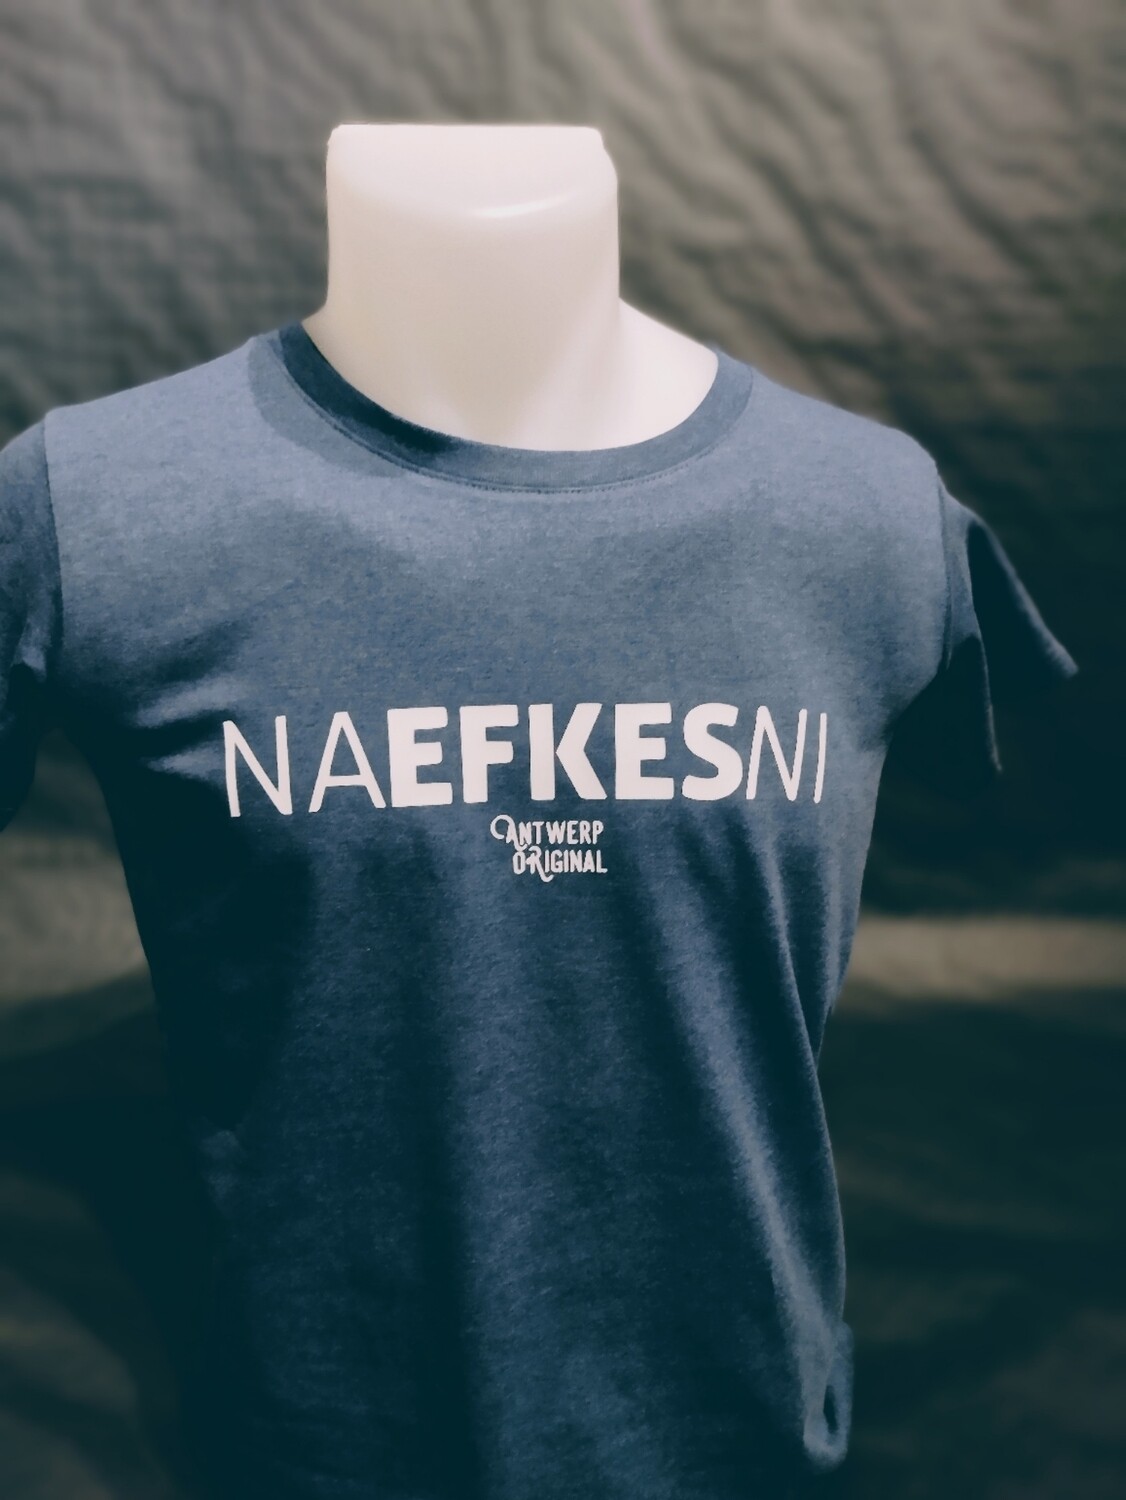 T shirt - Na Efkes Ni